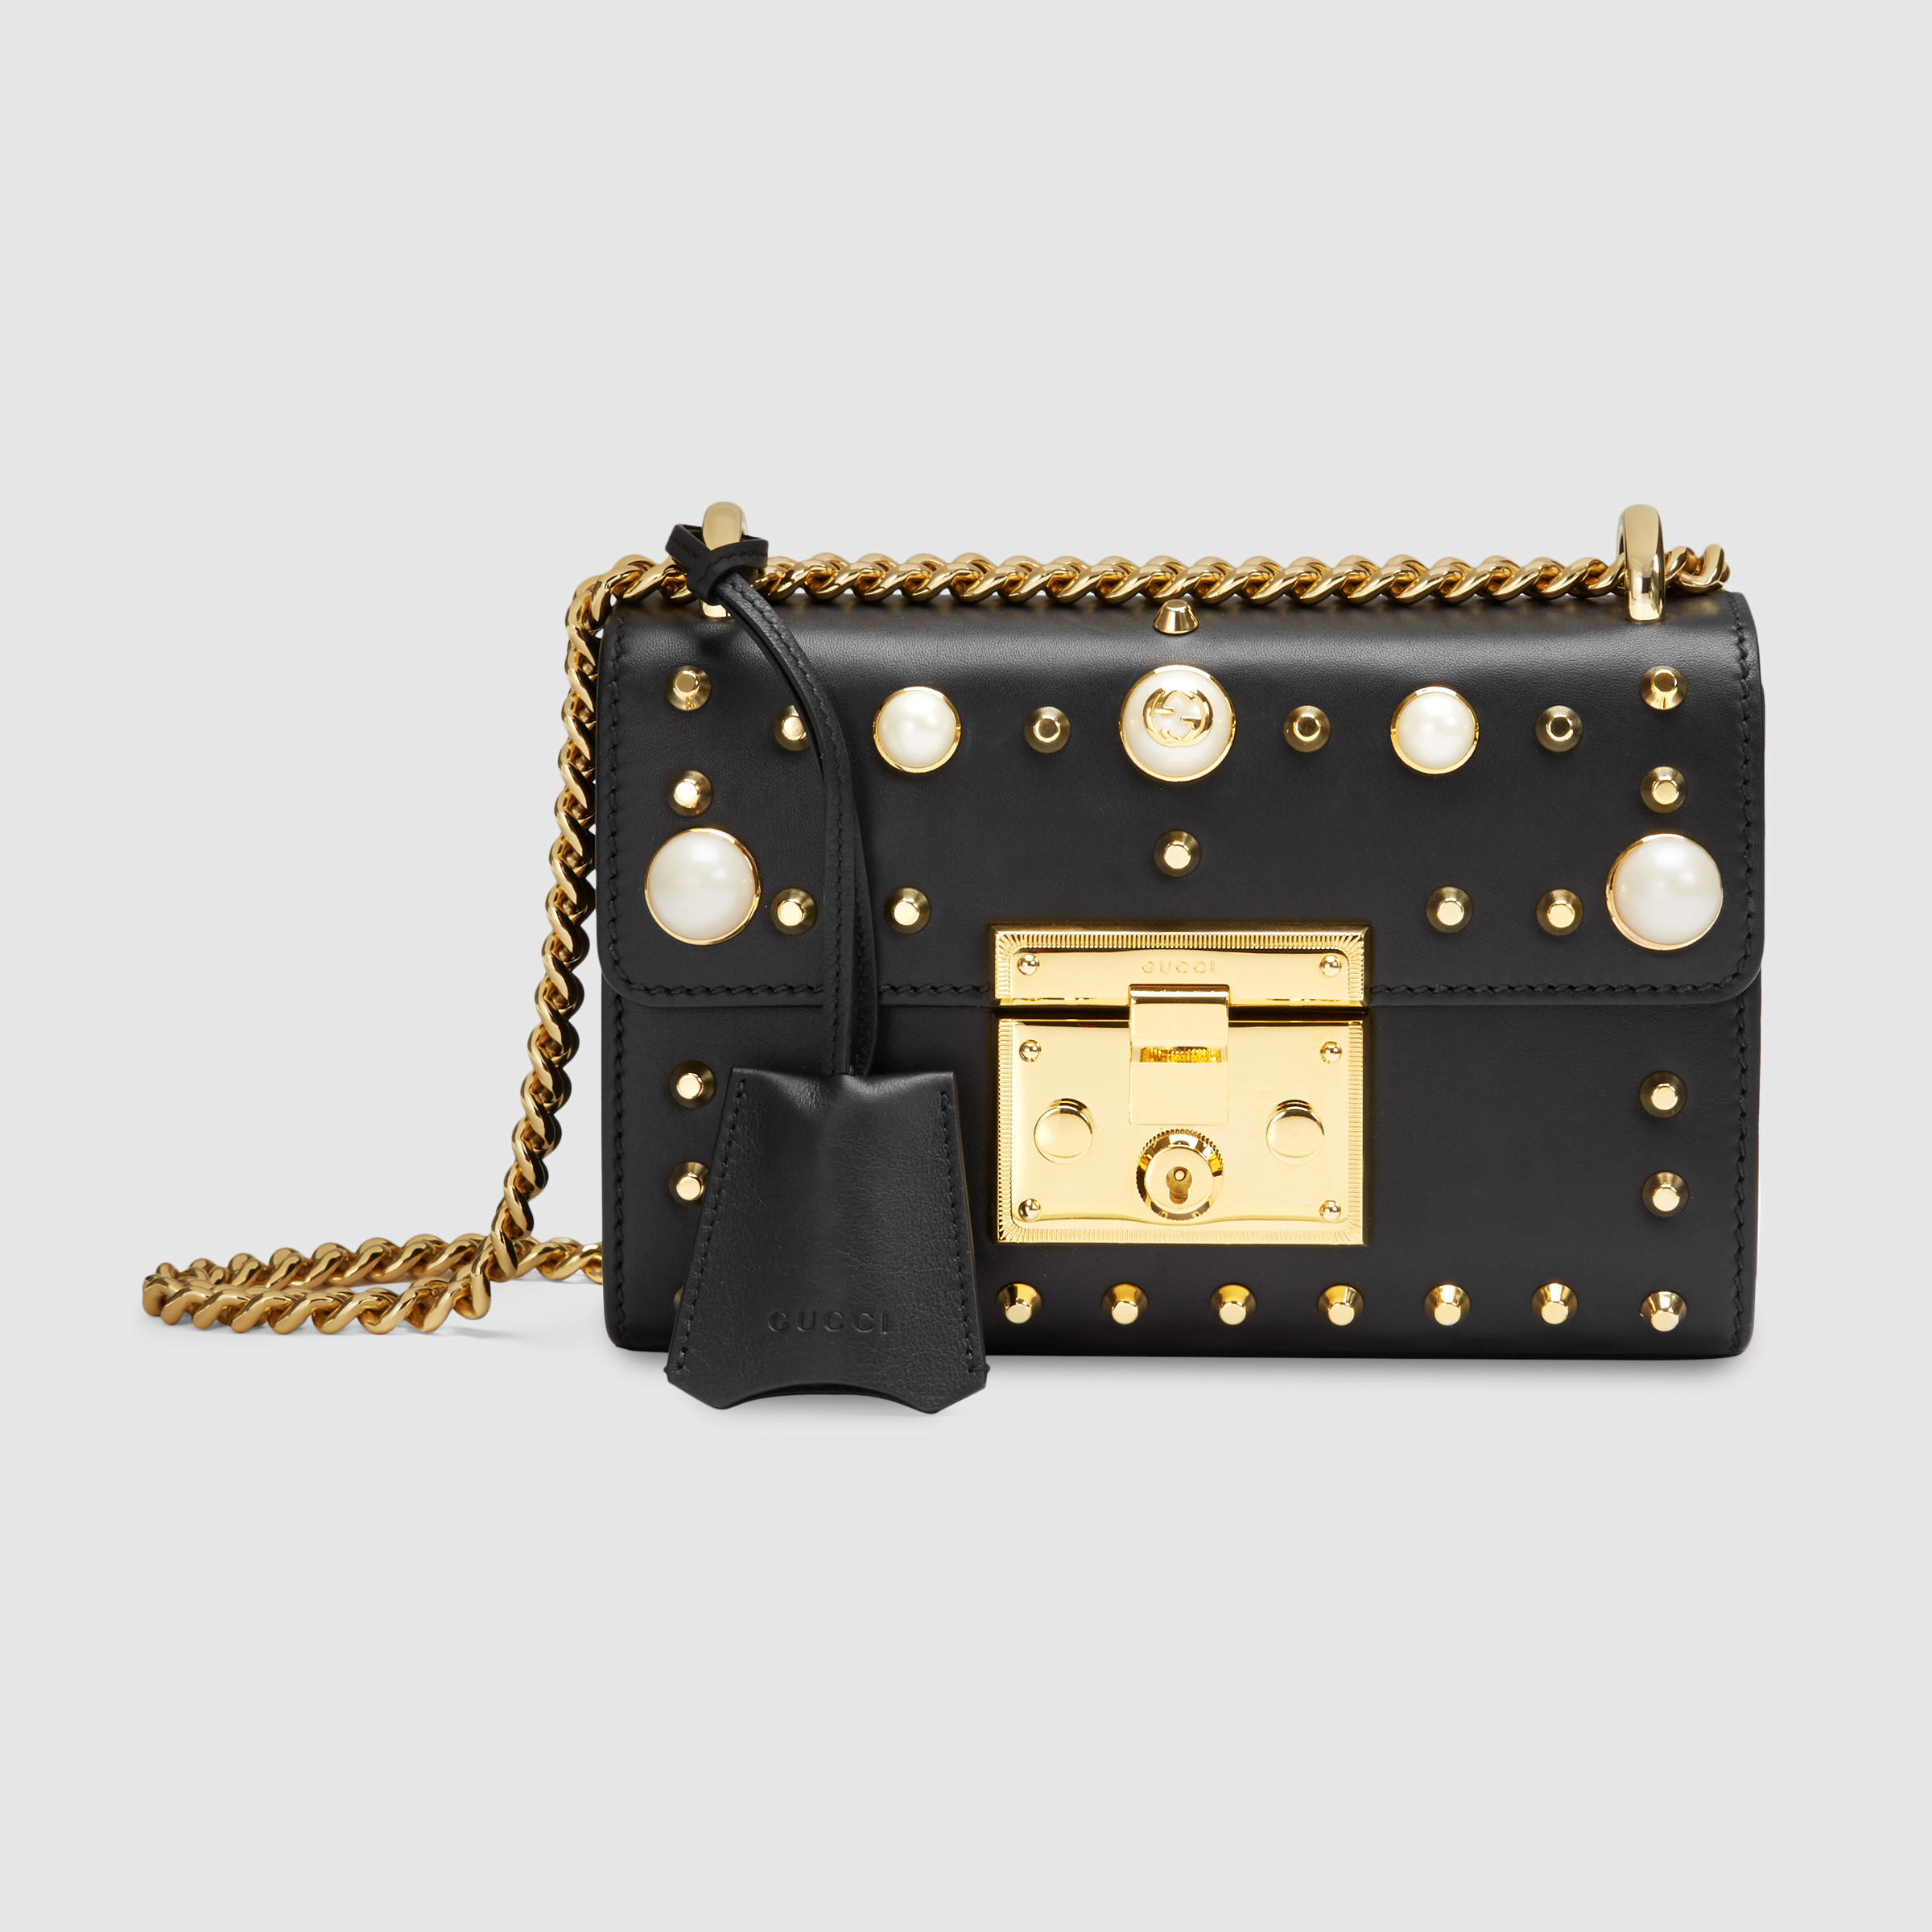 Lyst - Gucci Padlock Mini Embellished Leather Shoulder Bag in Black